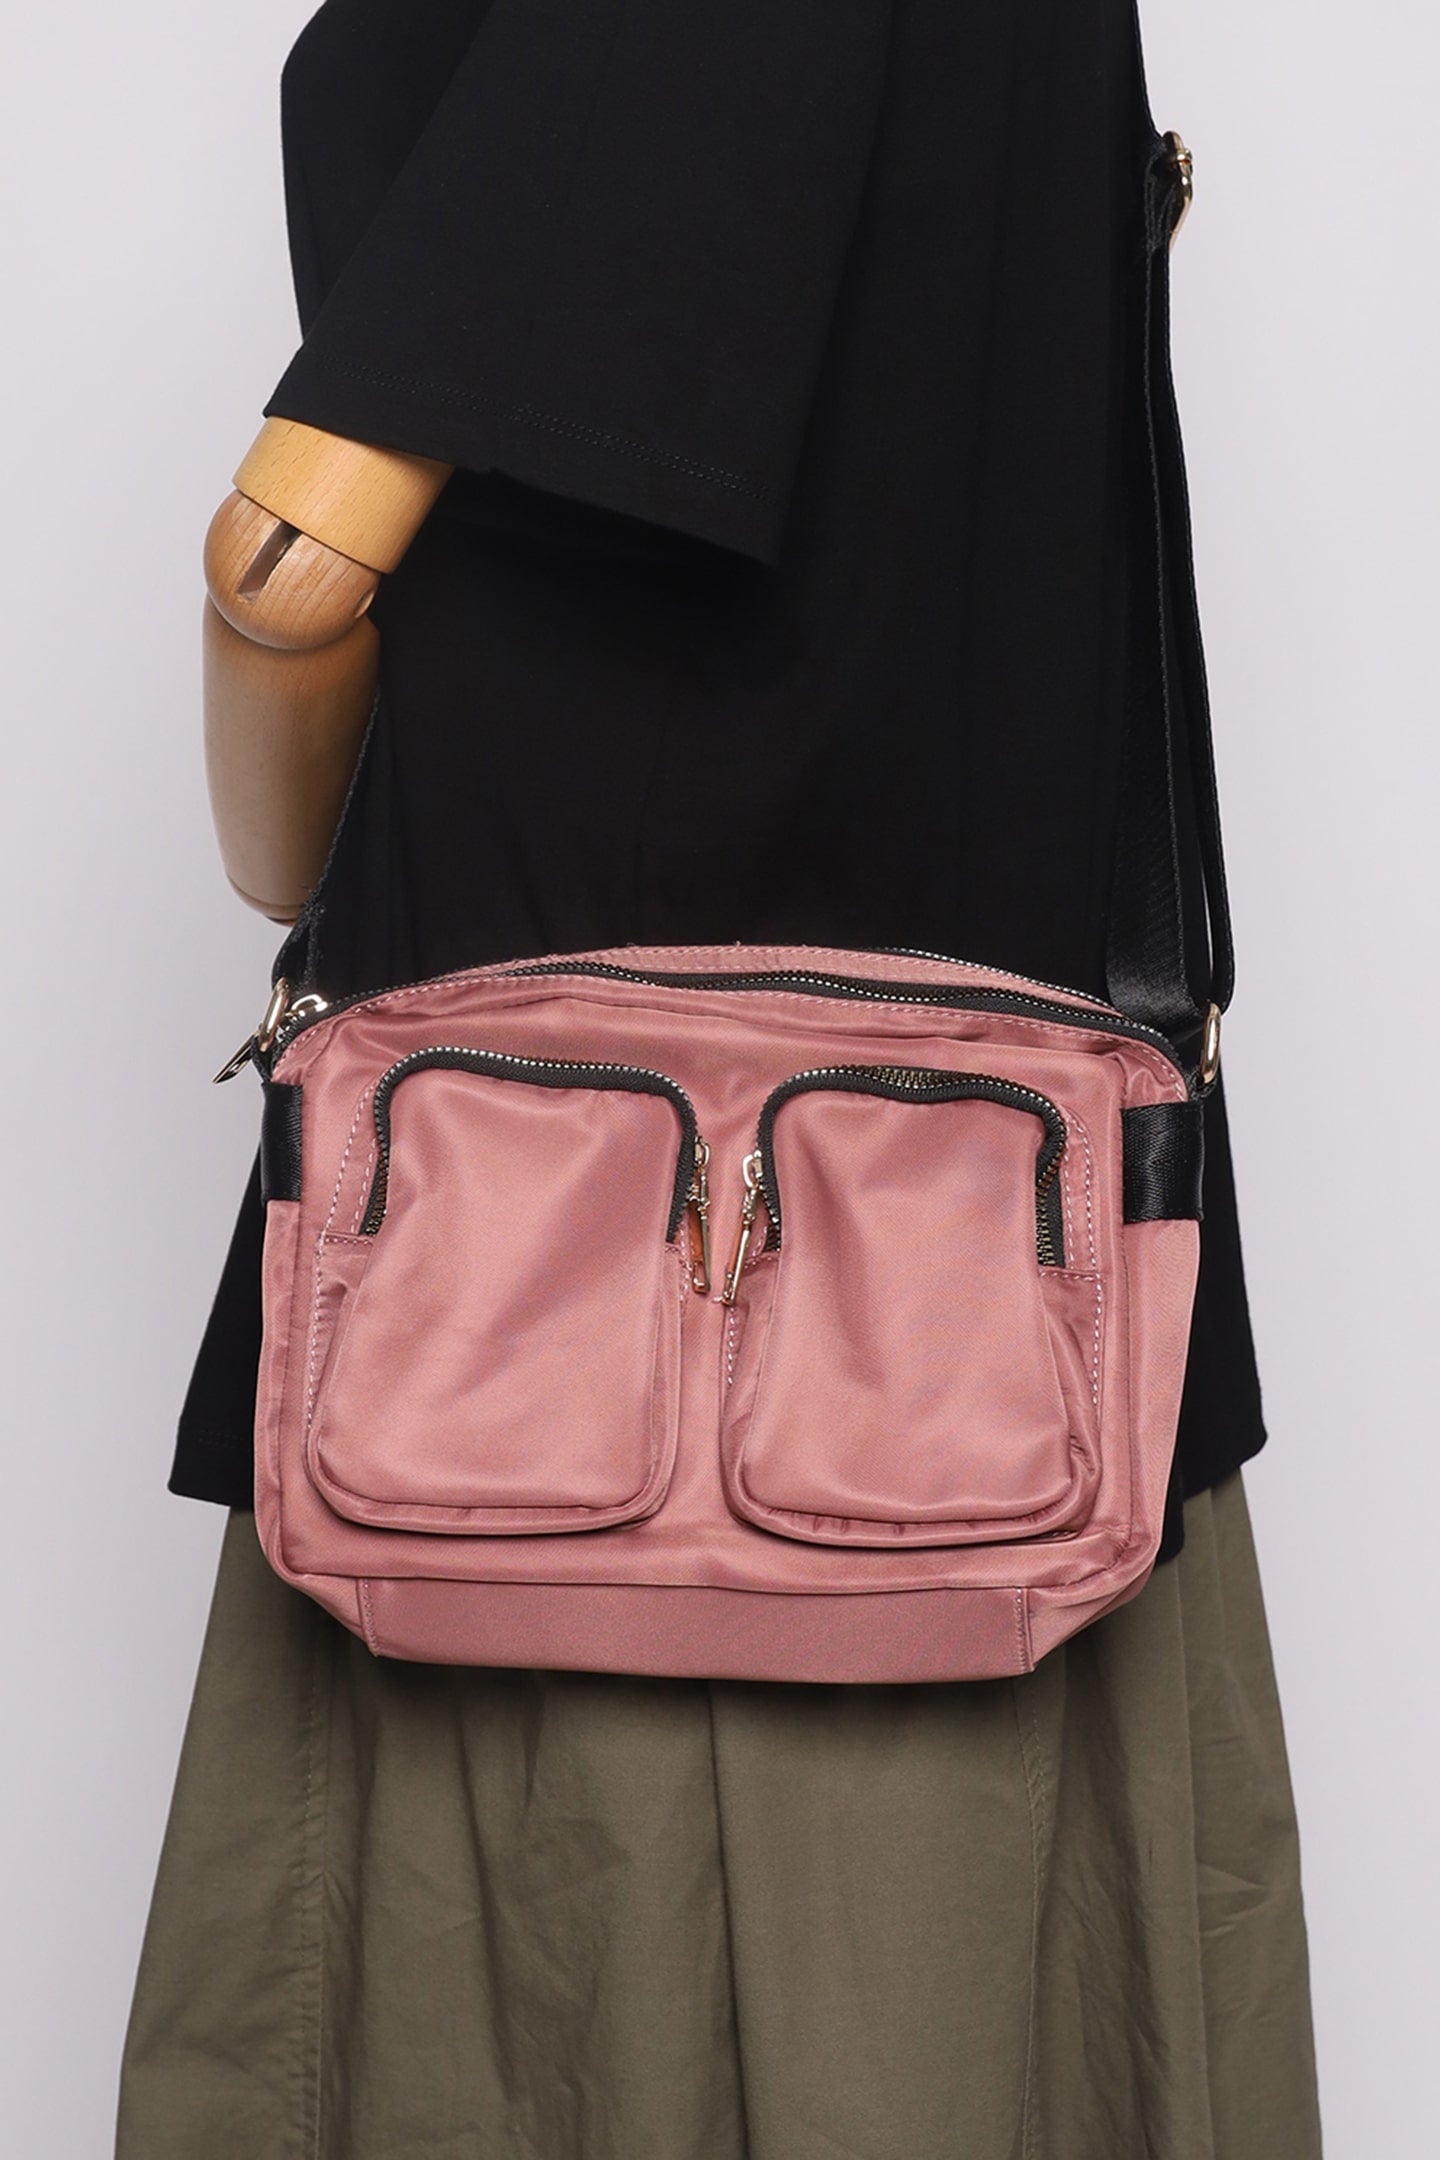 Melly Pocket Bag in Pink